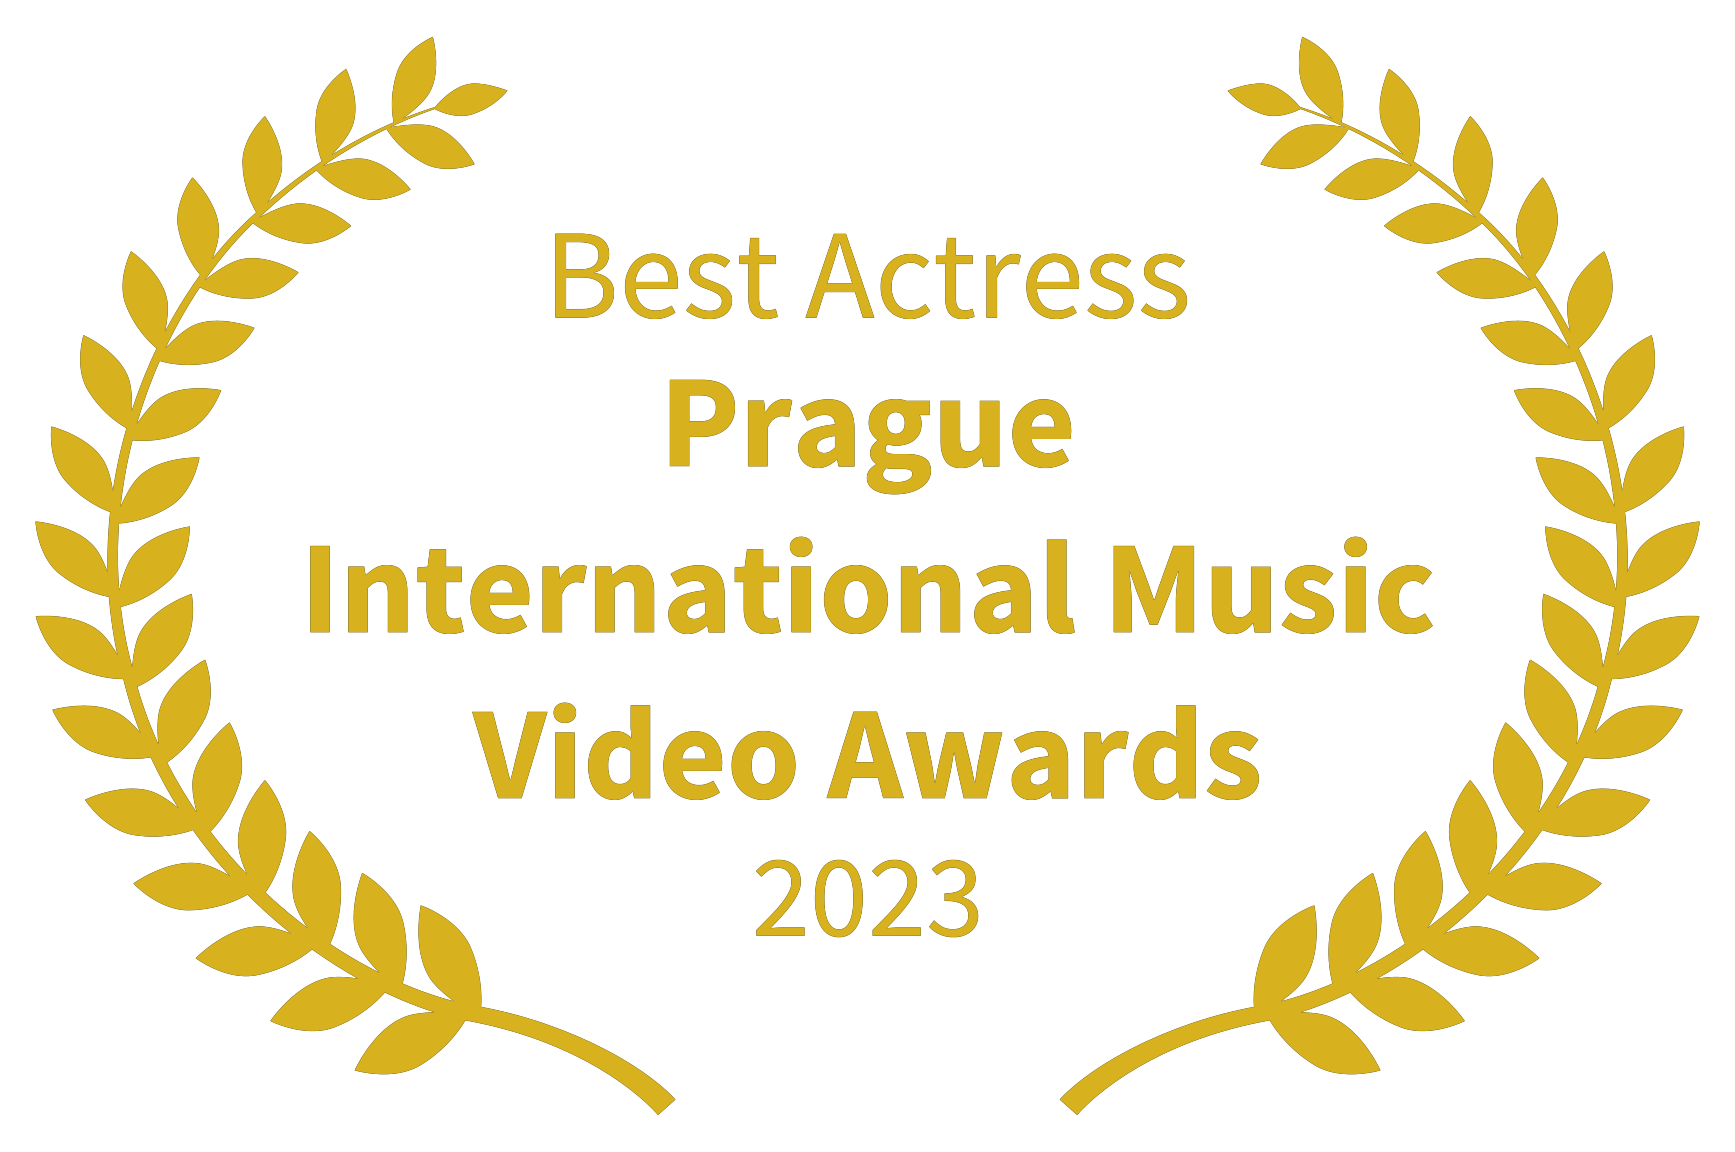 Best Actress - Prague International Music Video Awards gold - 2023.png